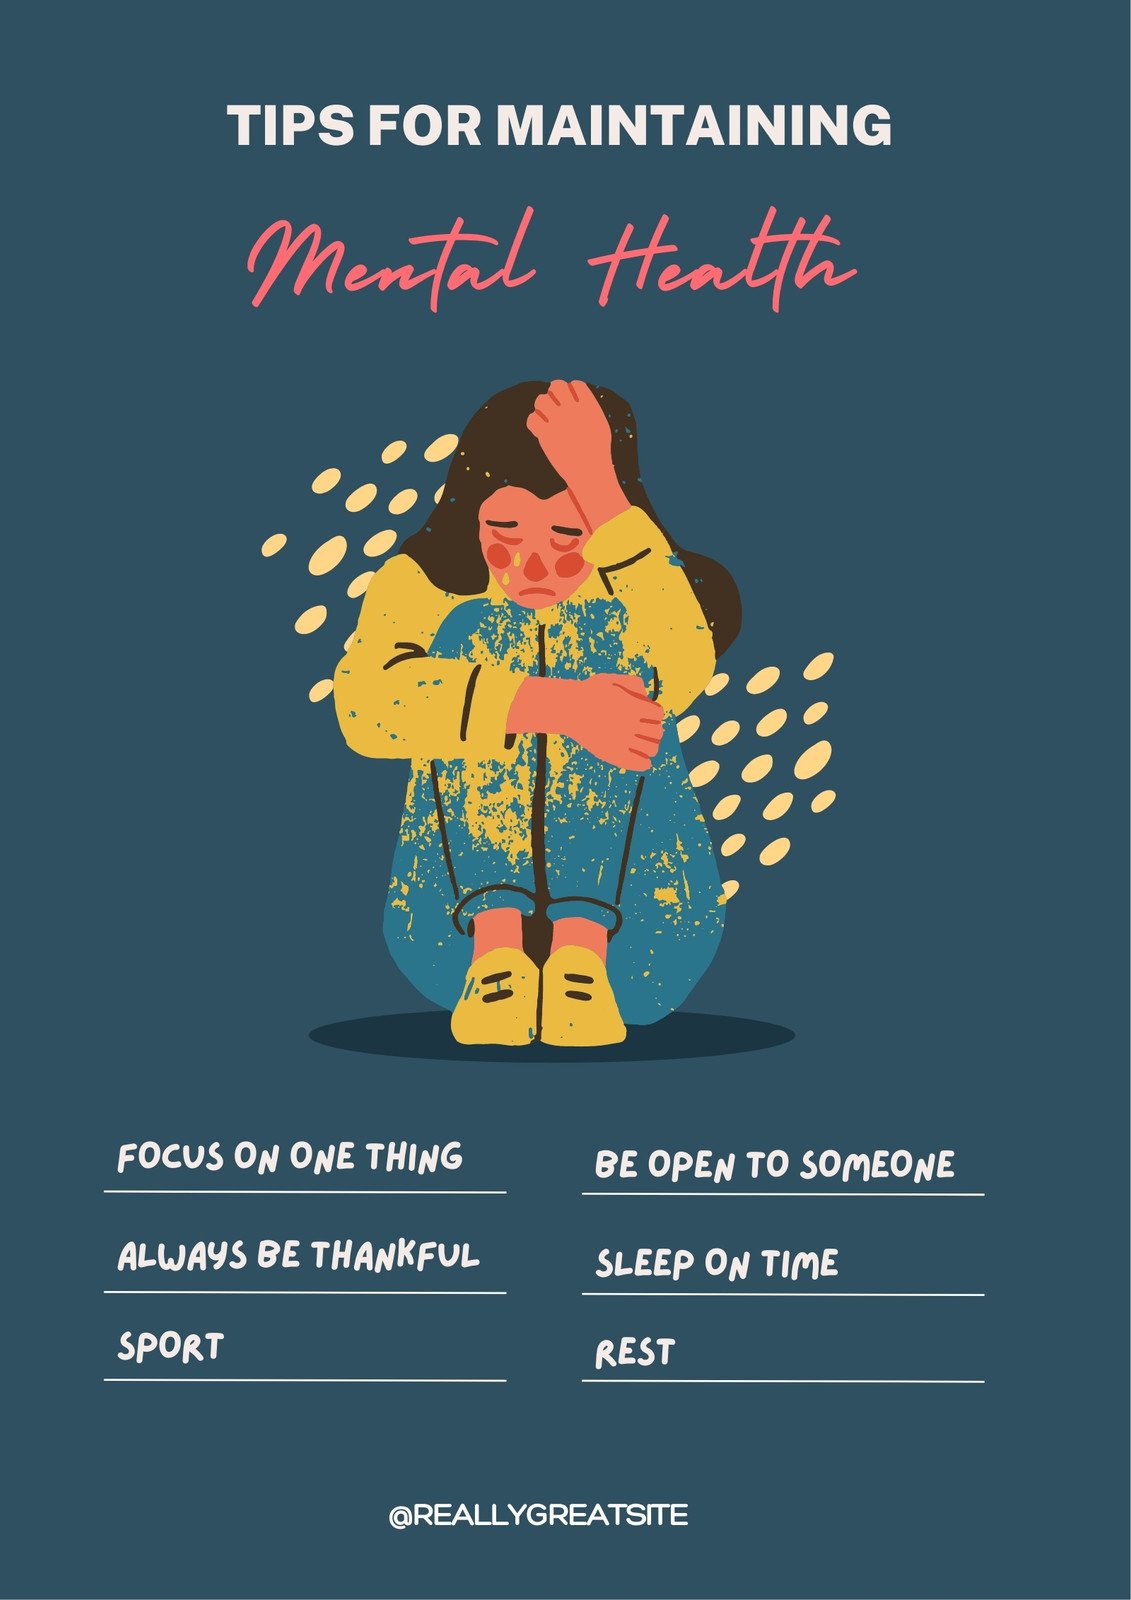 Mental Illness Awareness Posters